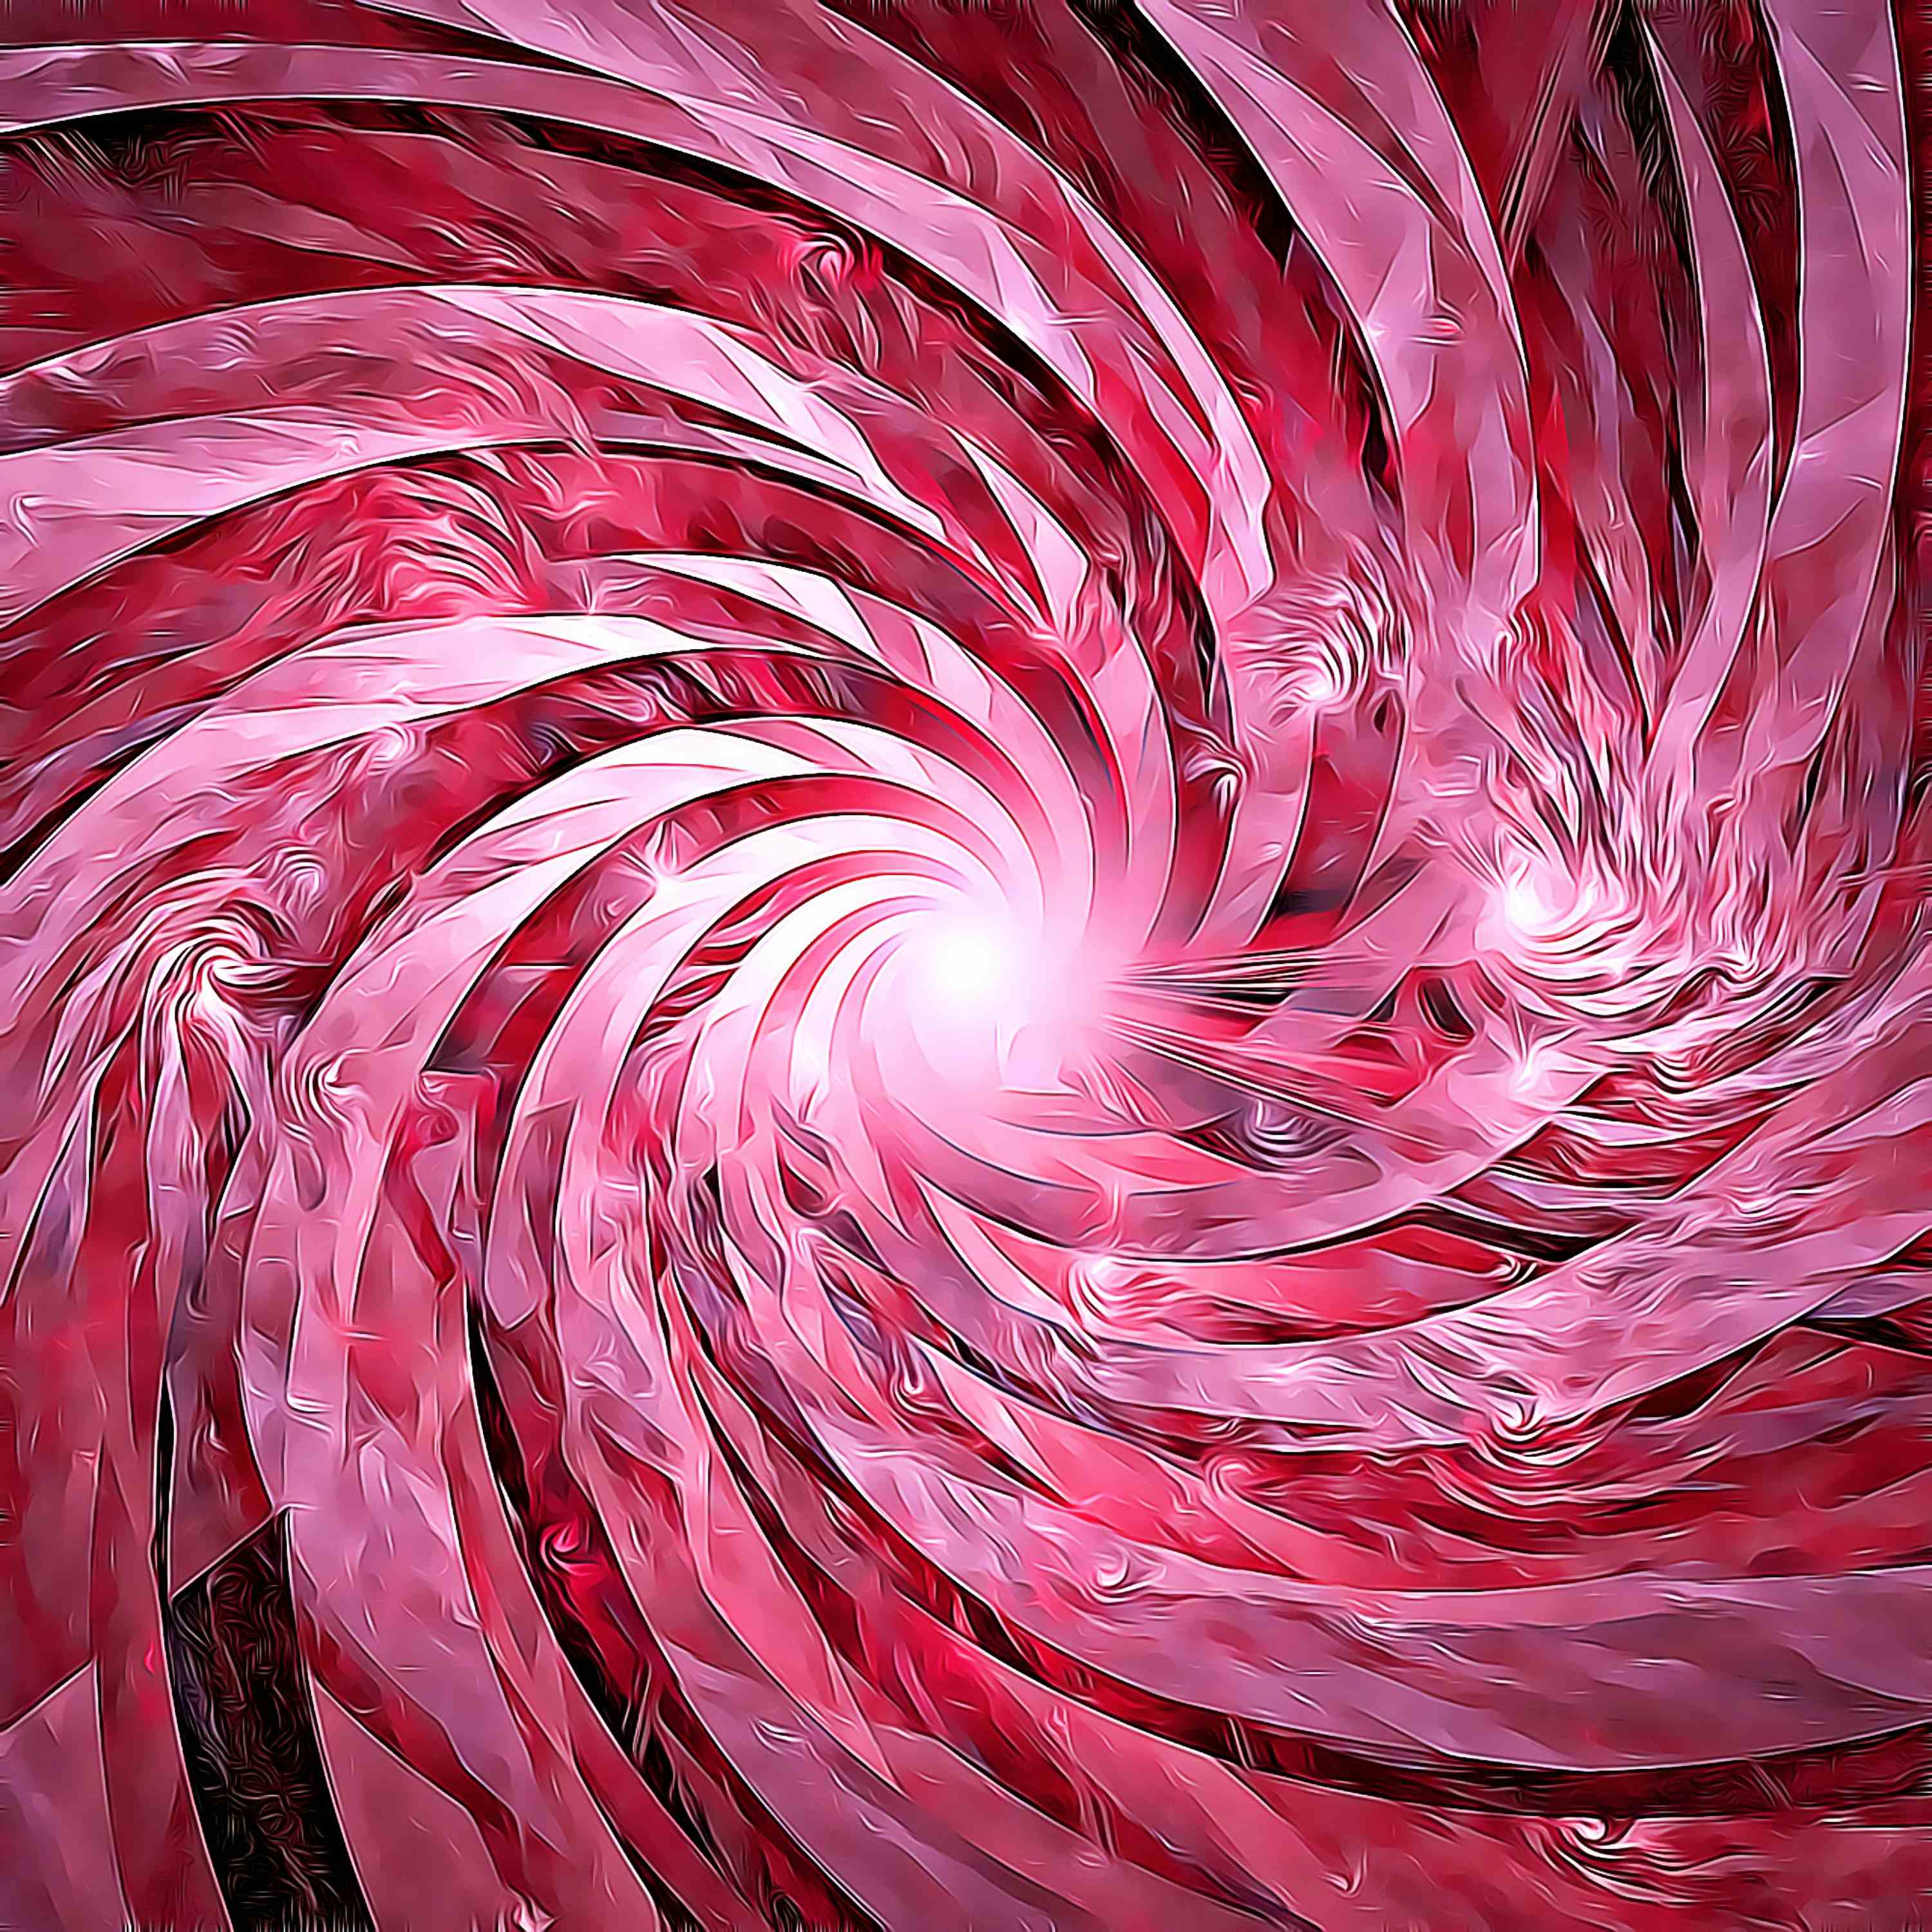 fractal 3 - vortex